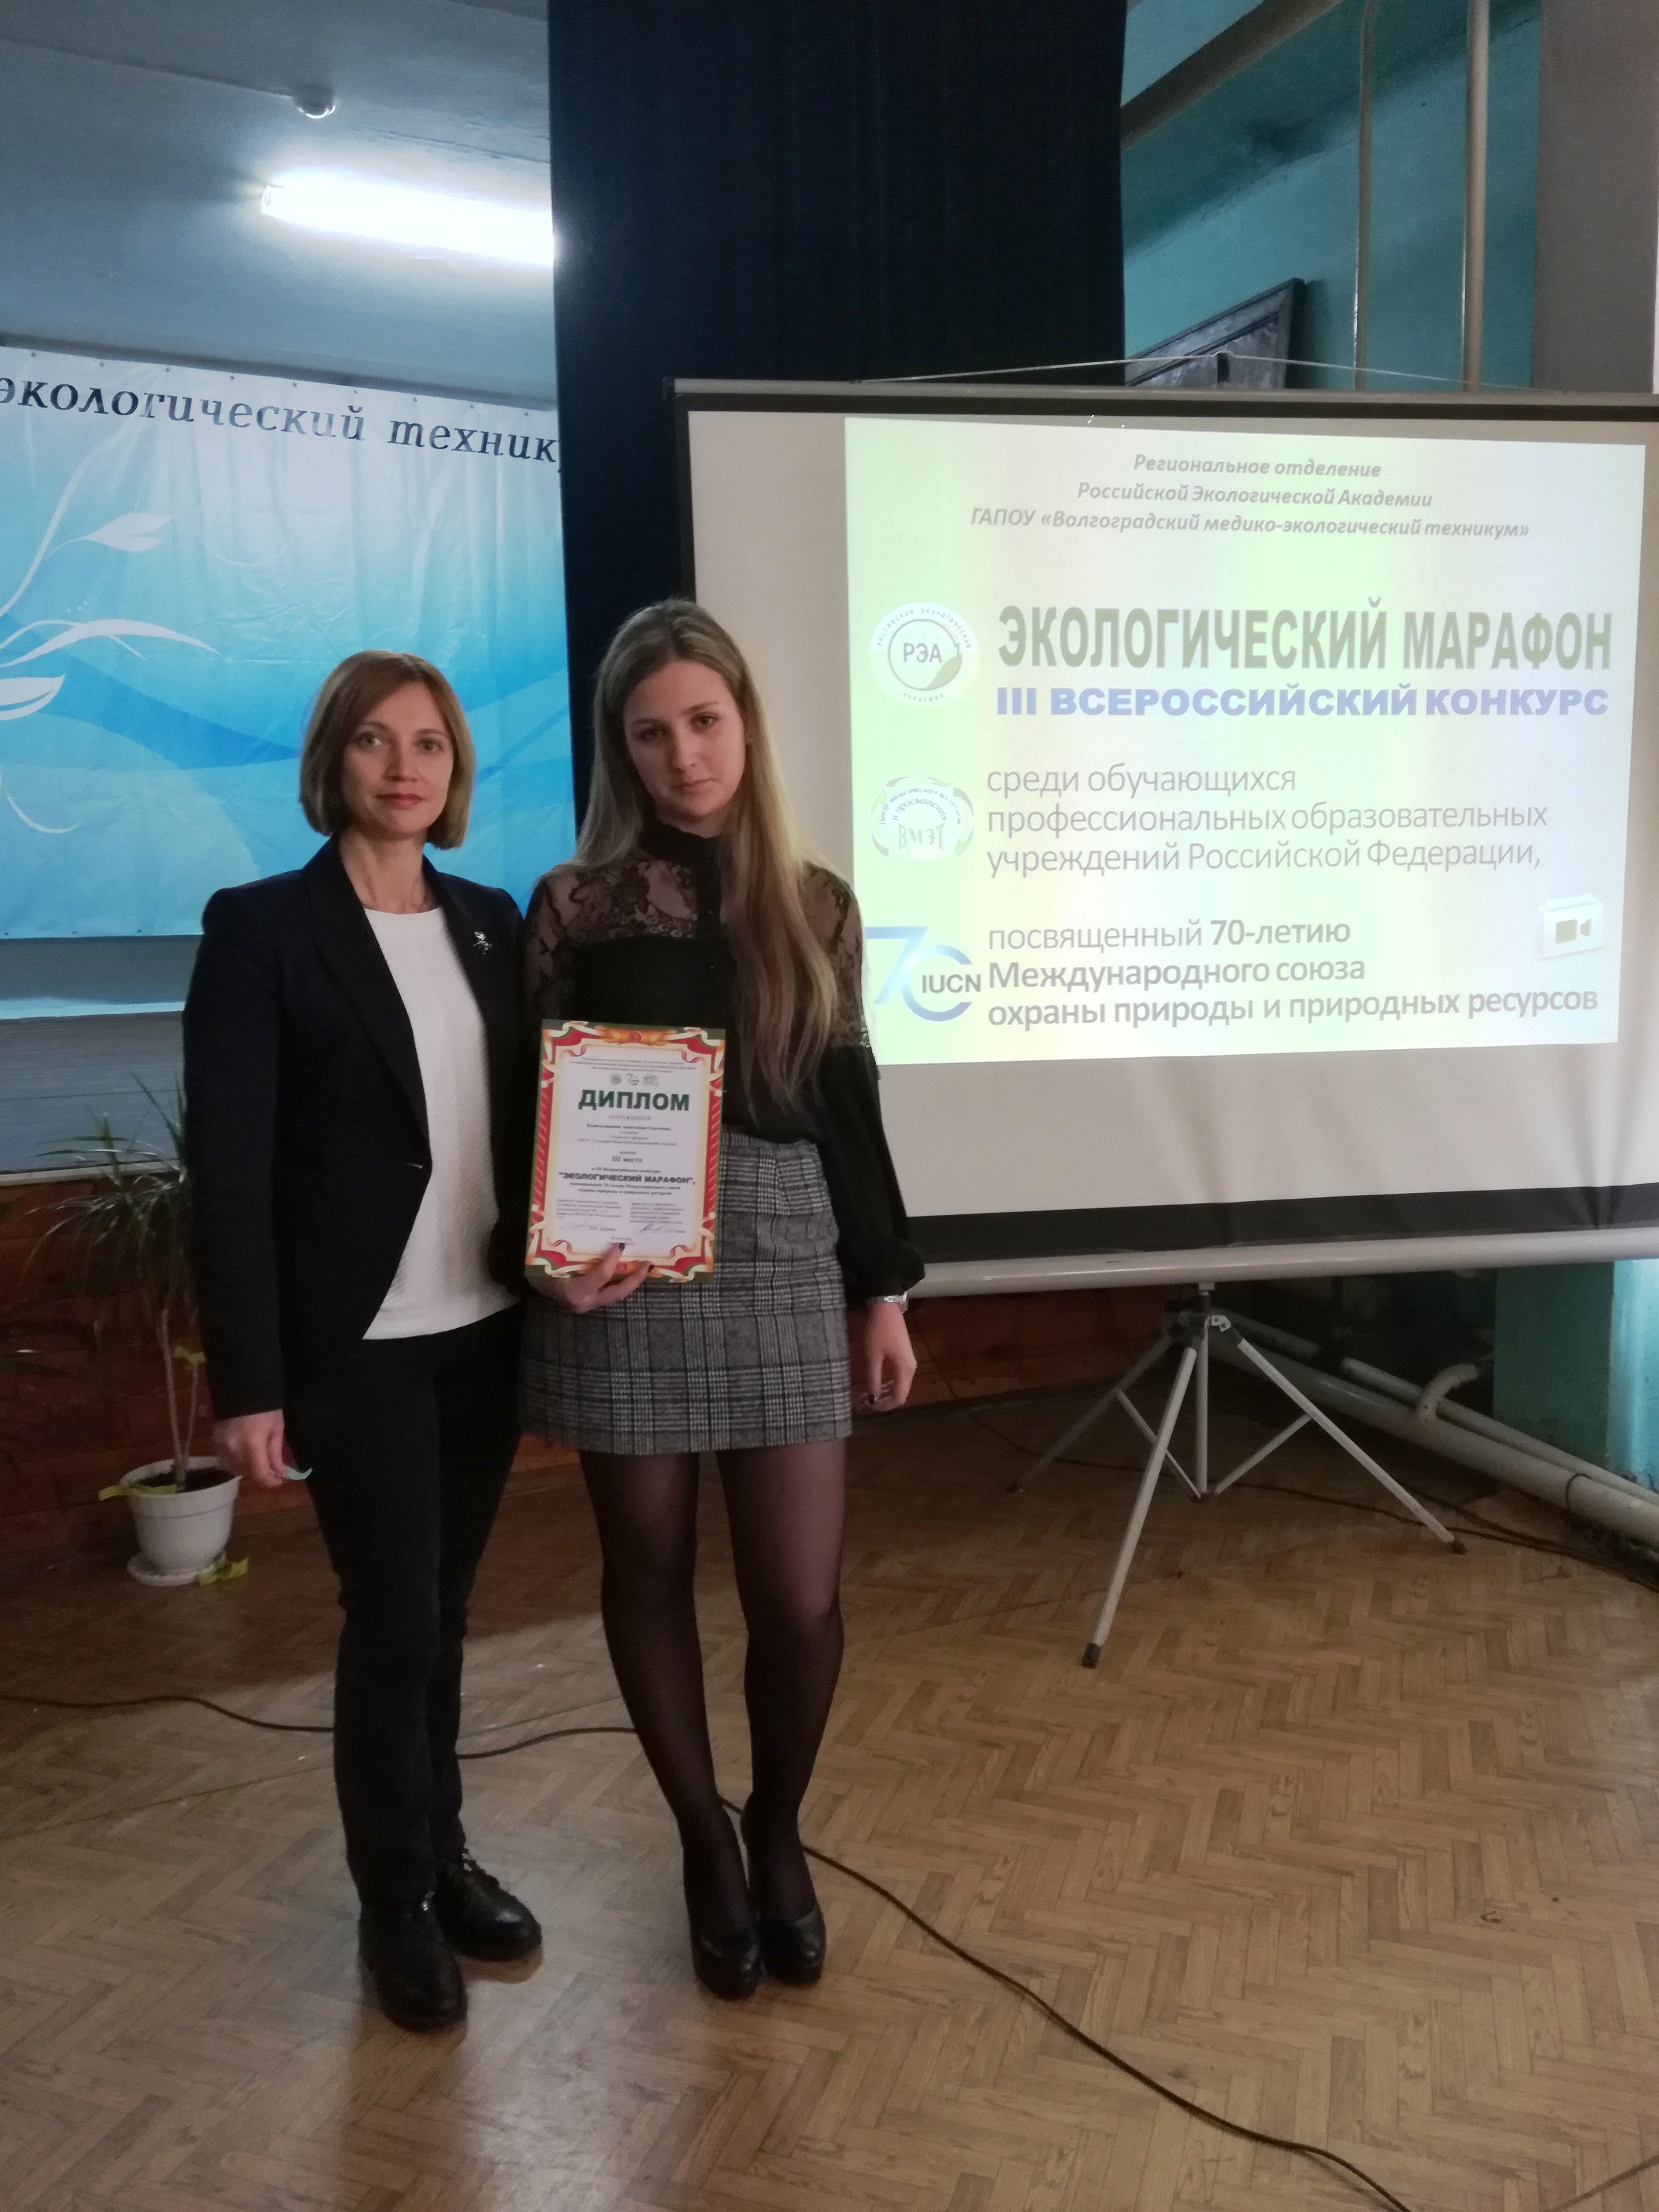 Экологический марафон в Волгограде: результаты преподавателя ВГАППССС